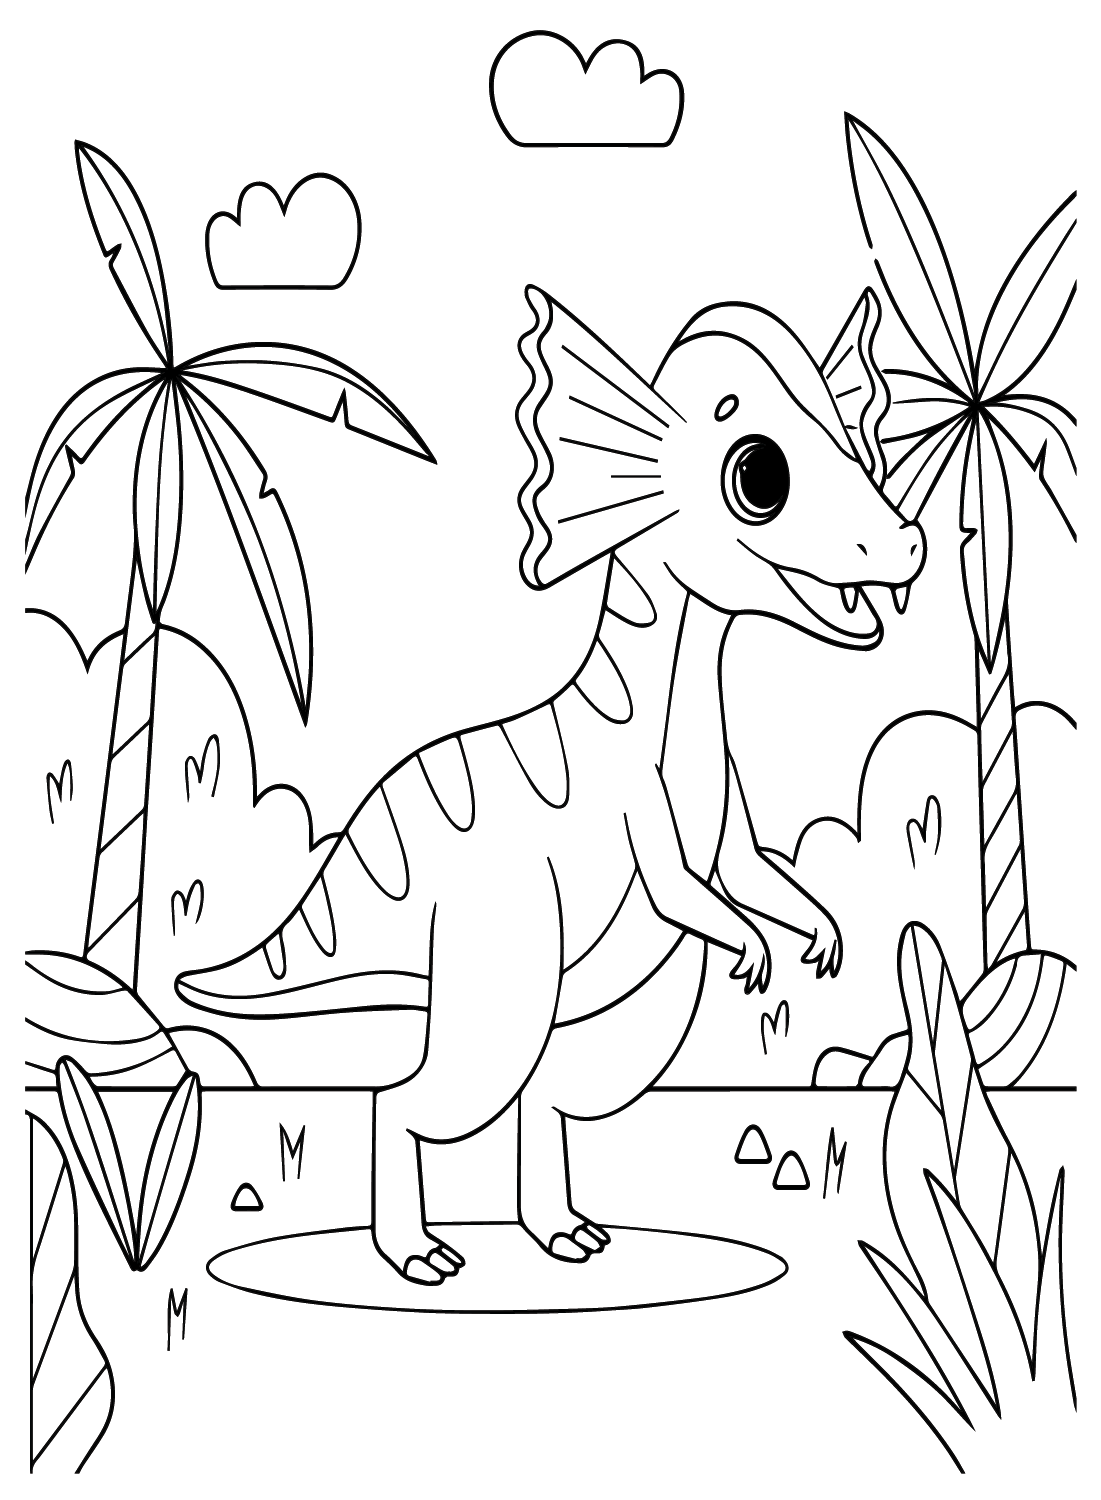 Imprimir página para colorear de Dilophosaurus de Dilophosaurus